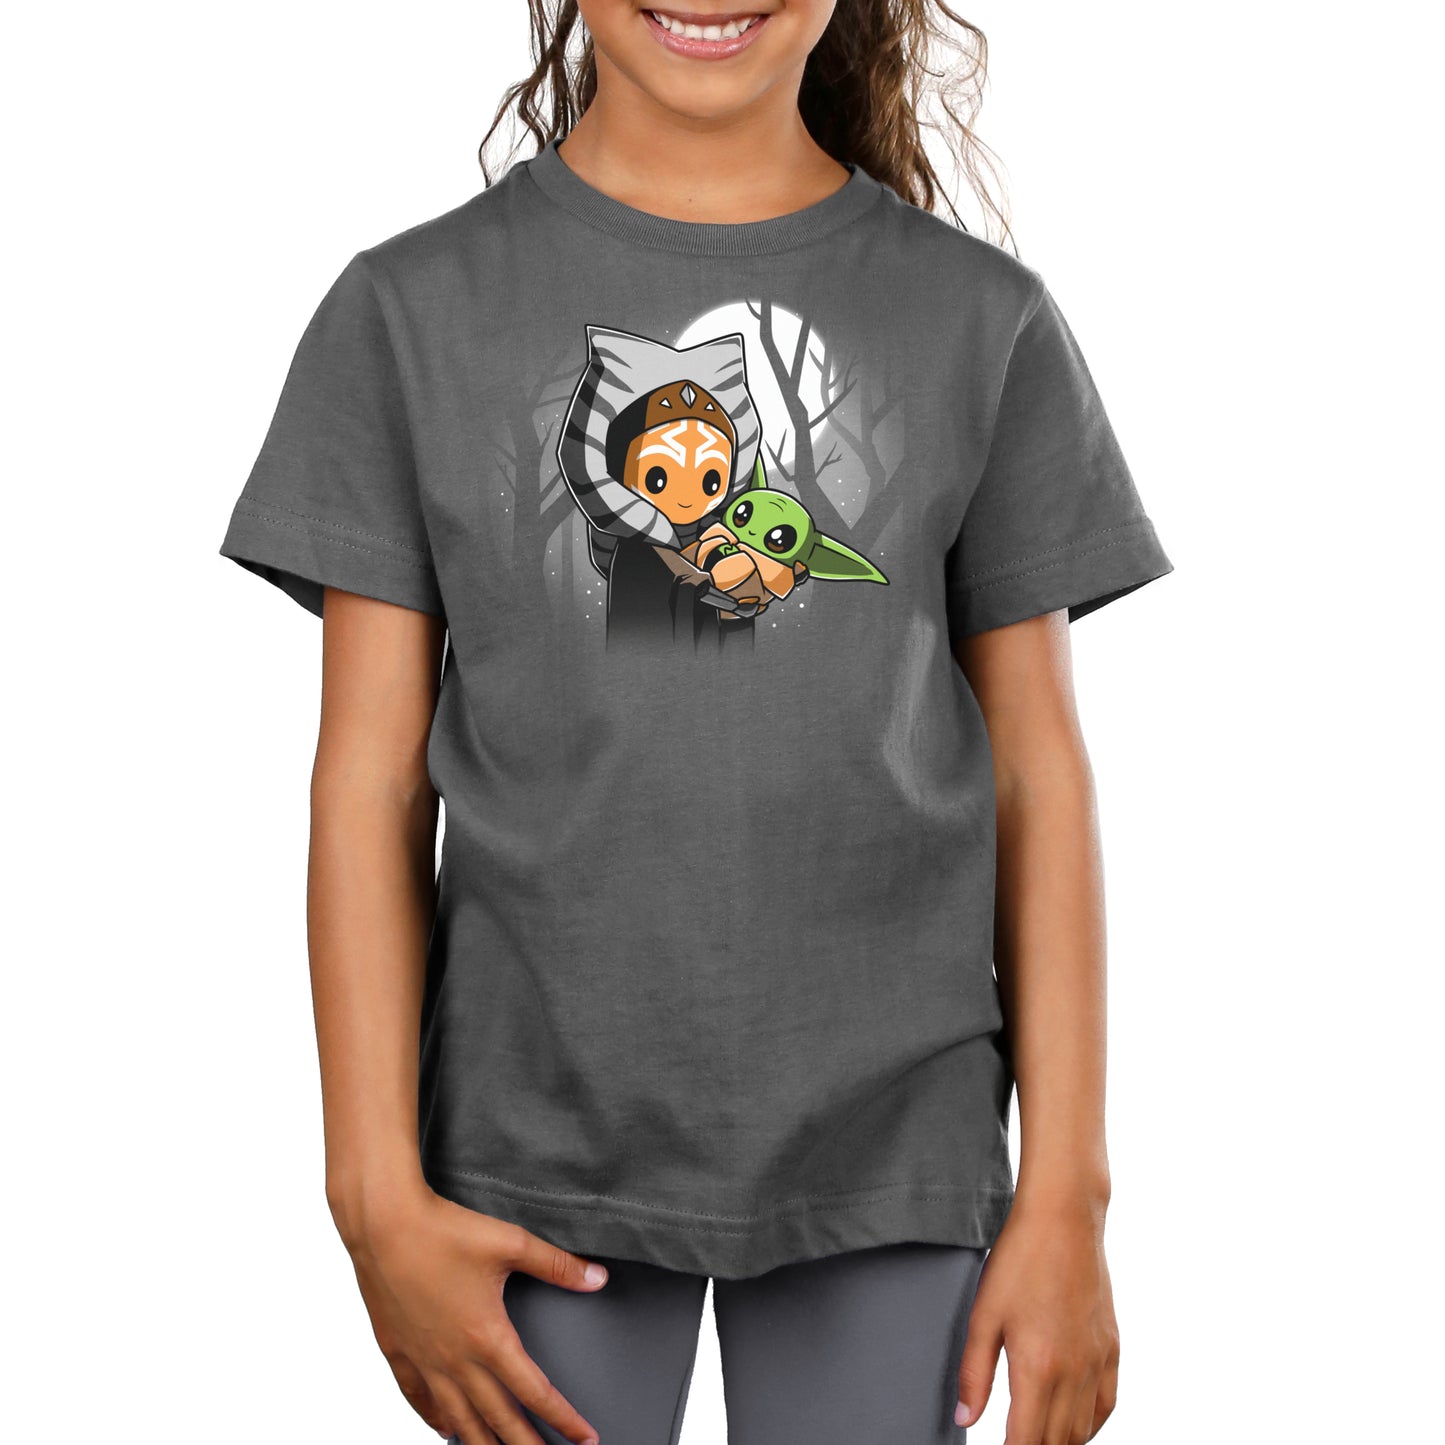 Yoda and baby Yoda BFFs (Ahsoka and Grogu) t-shirt by Star Wars.